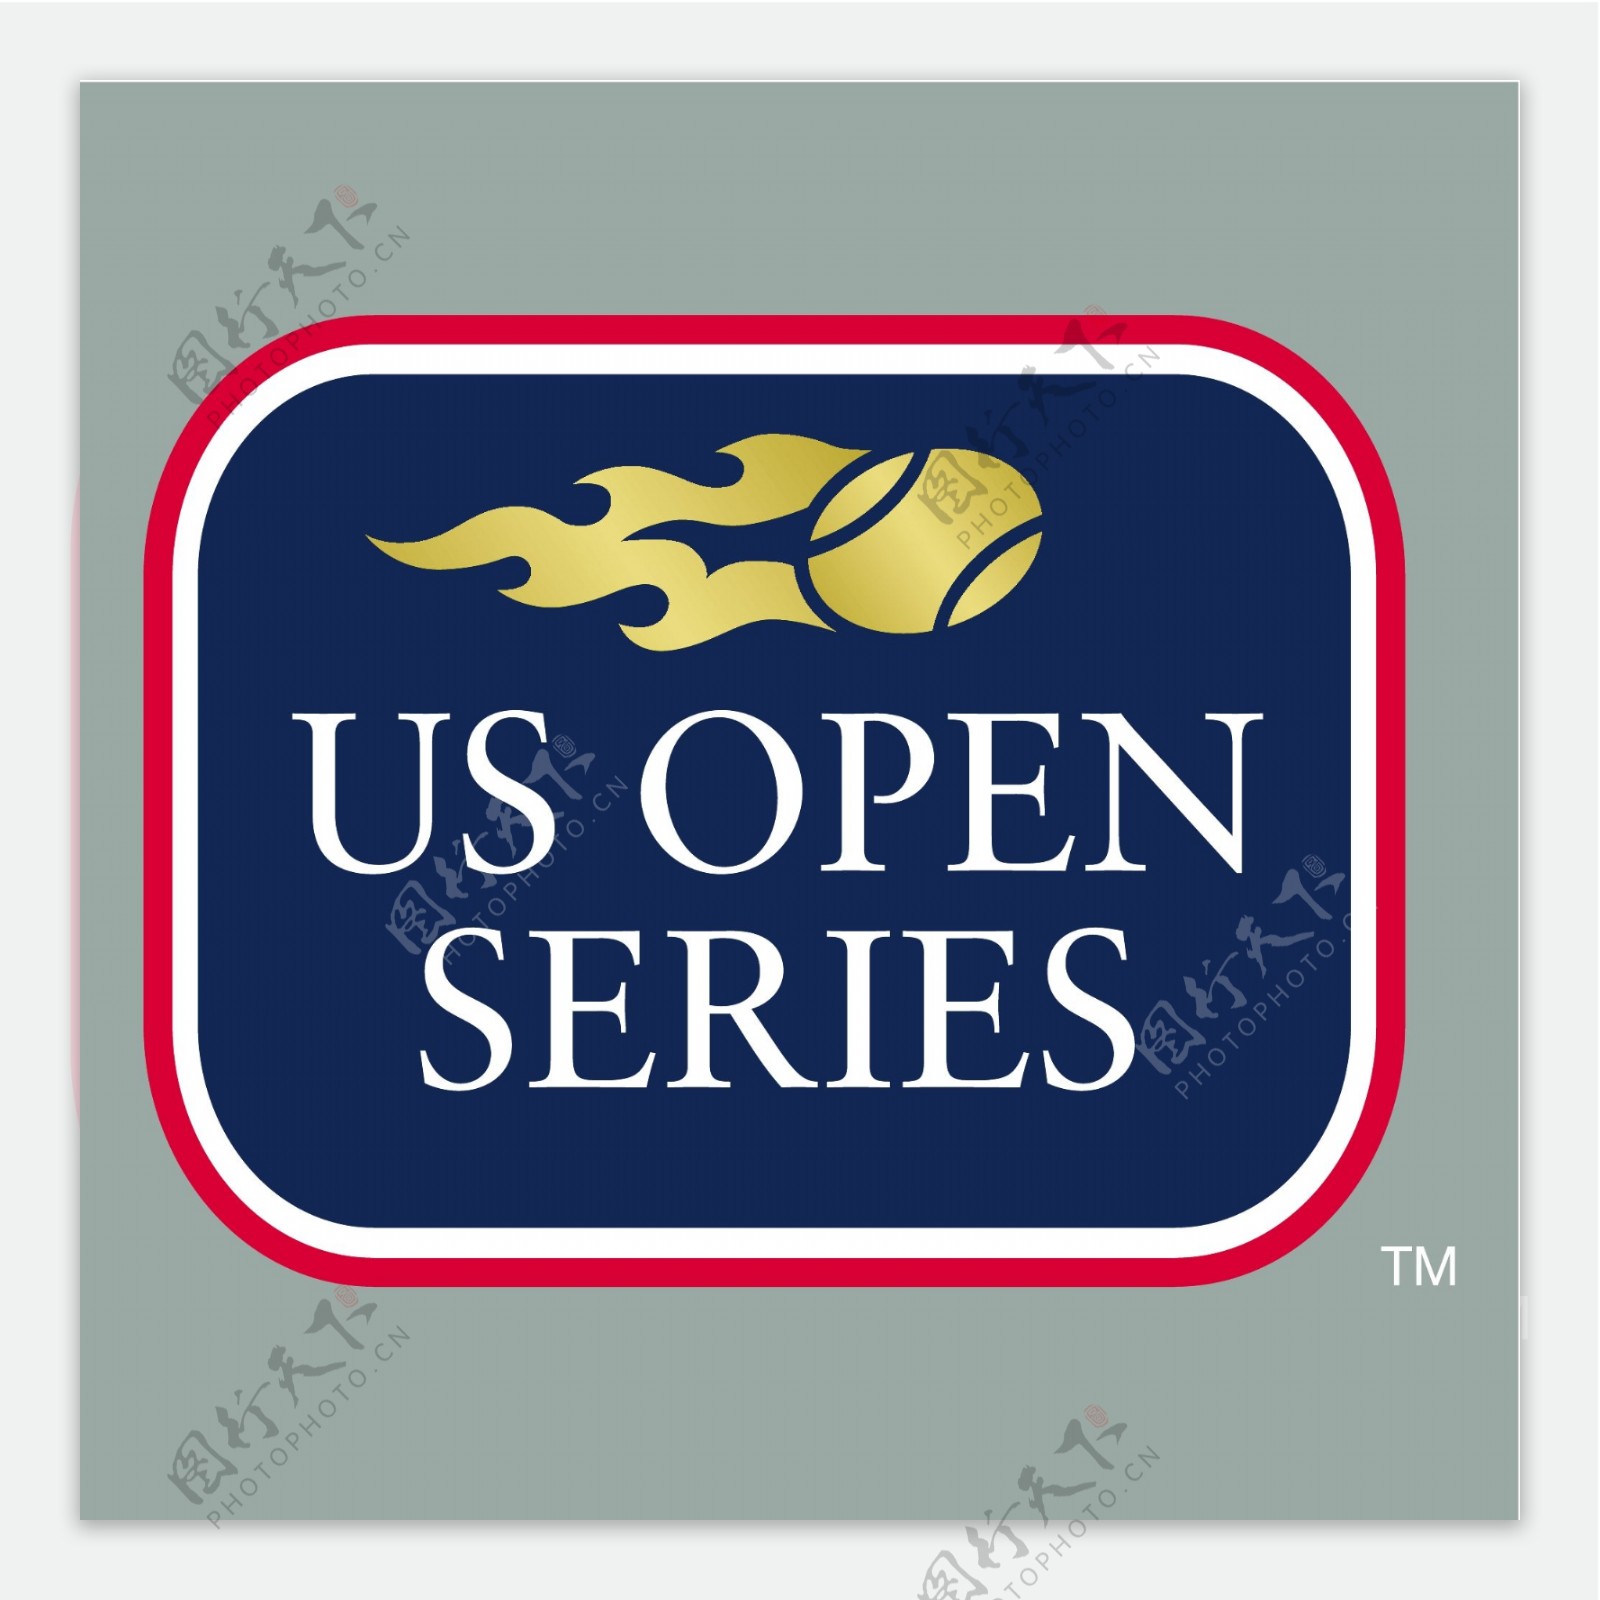 美国网球公开赛